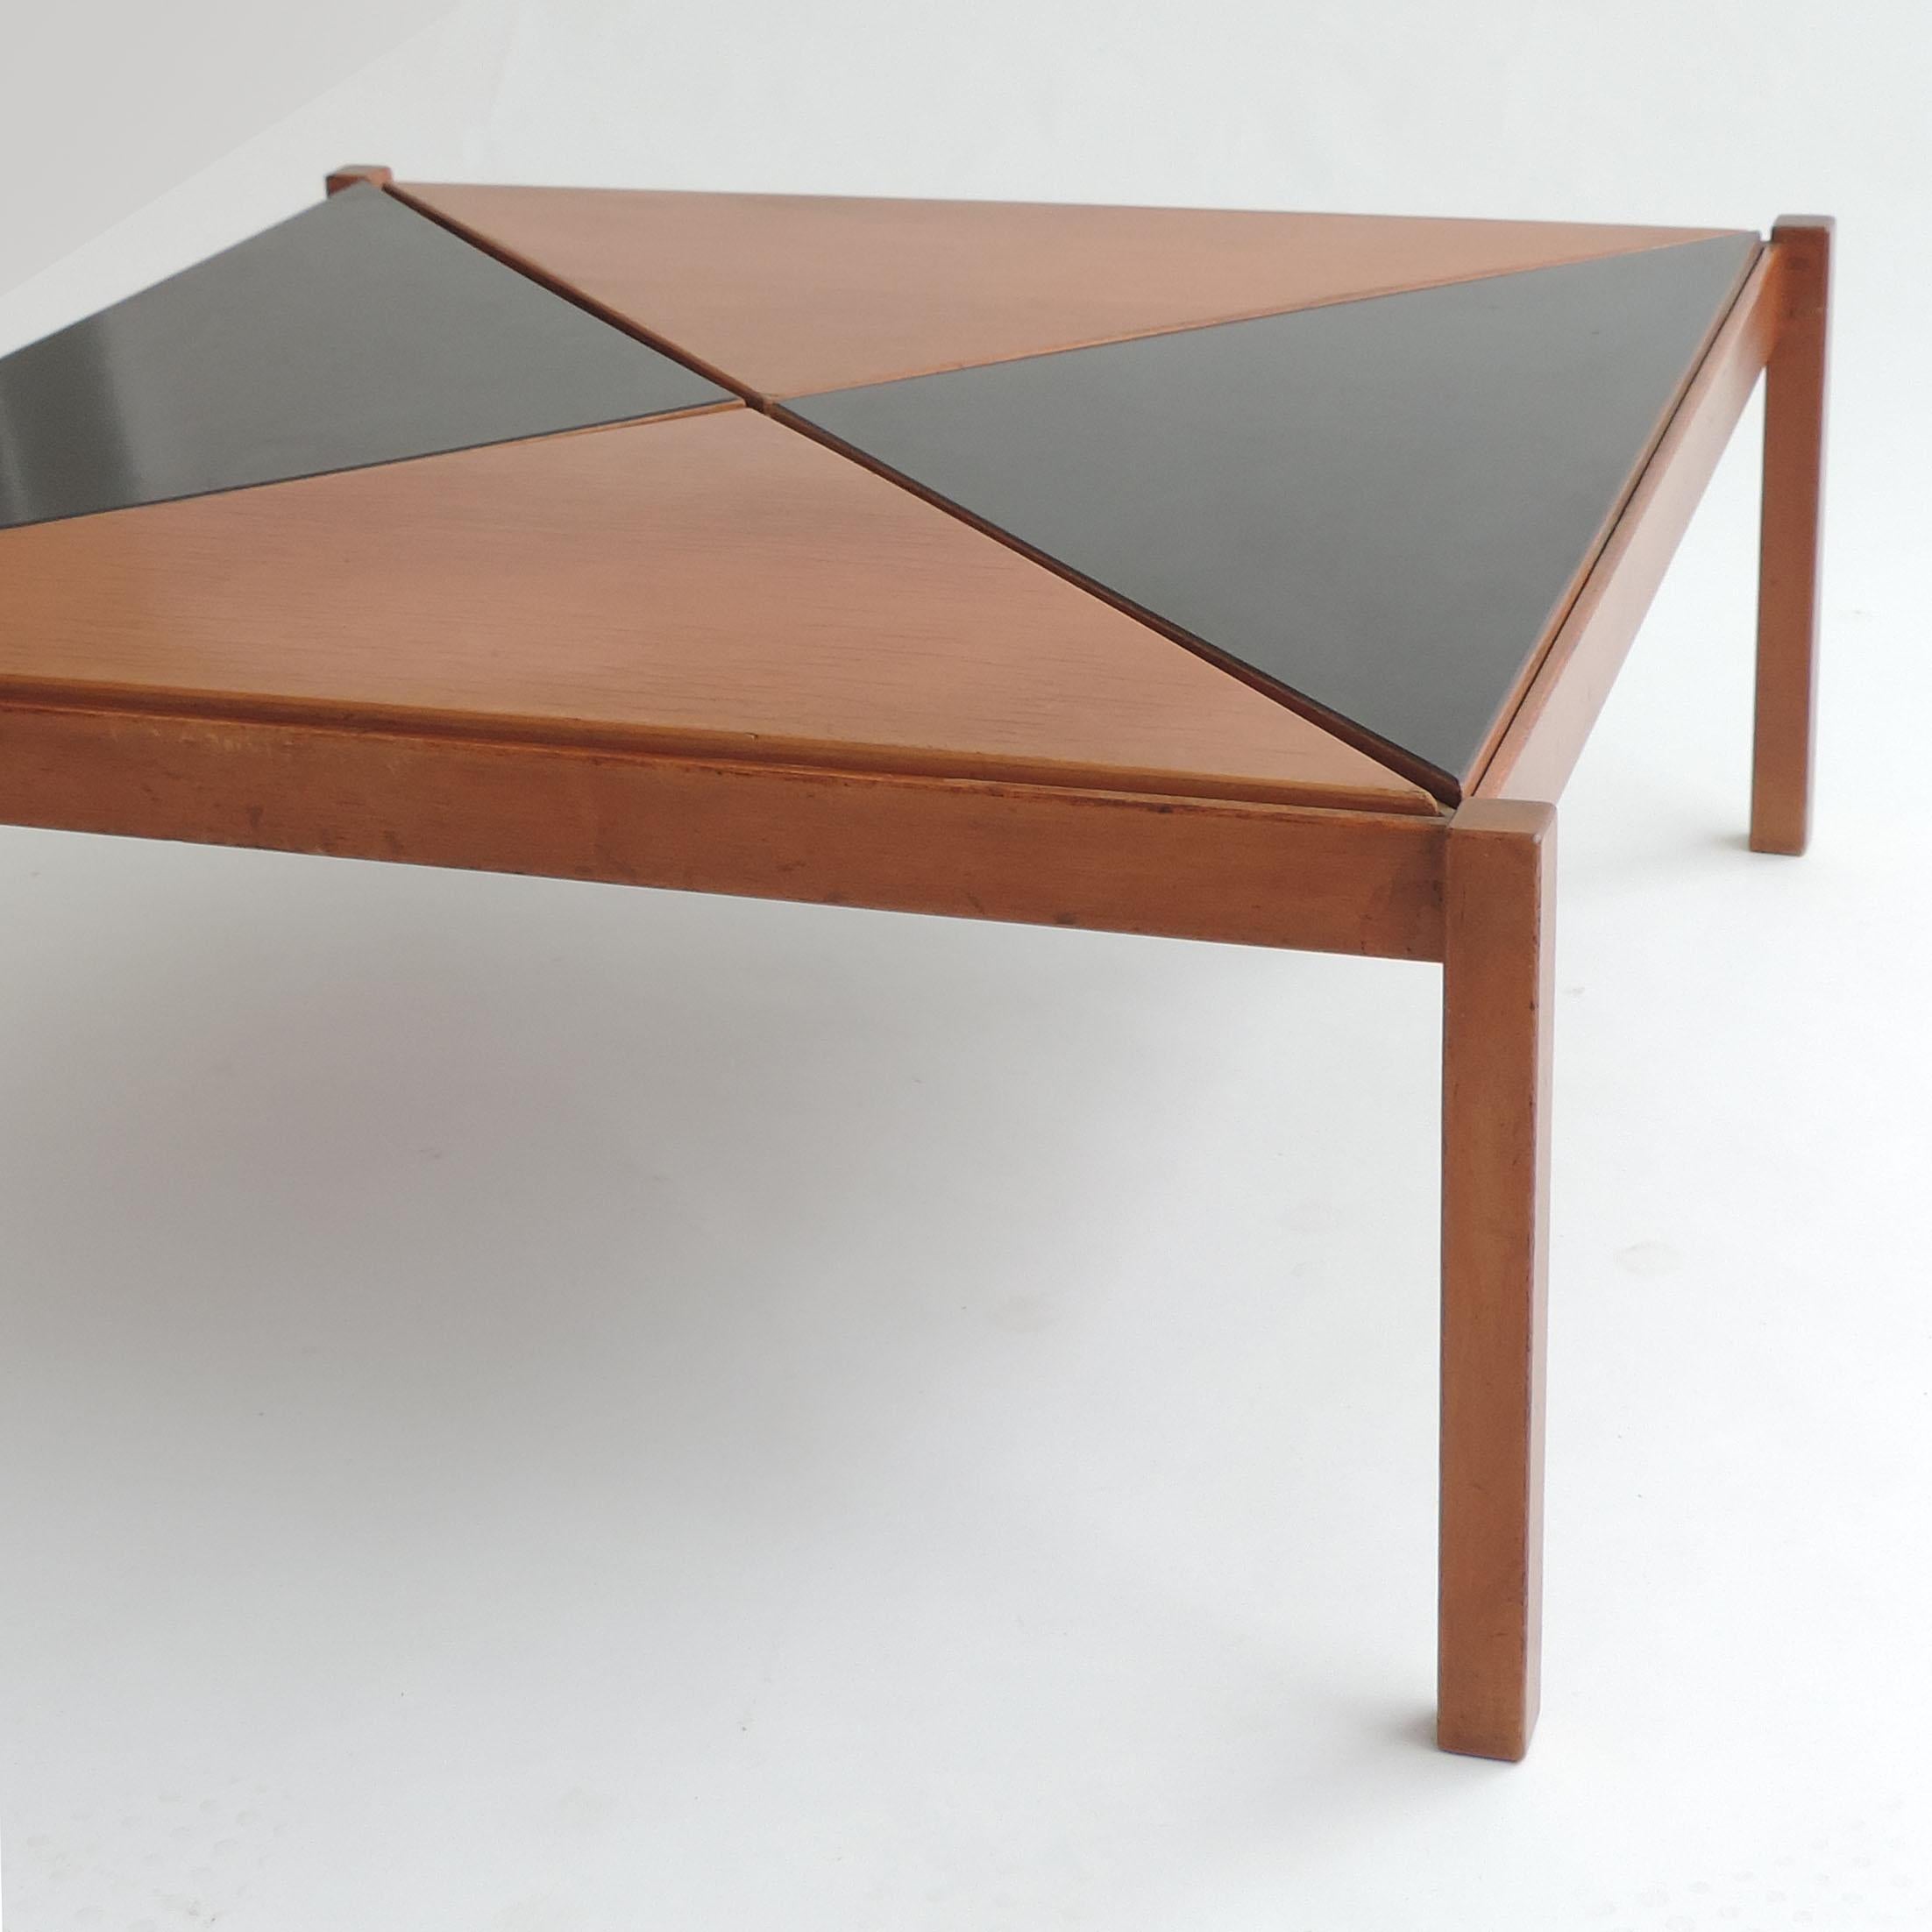 Rare table basse de l'architecte Gianfranco Frattini pour Cantieri Carugati, Italie, années 1950
Triangles interchangeables en bois et noir déplaçables à volonté pour créer différents effets.